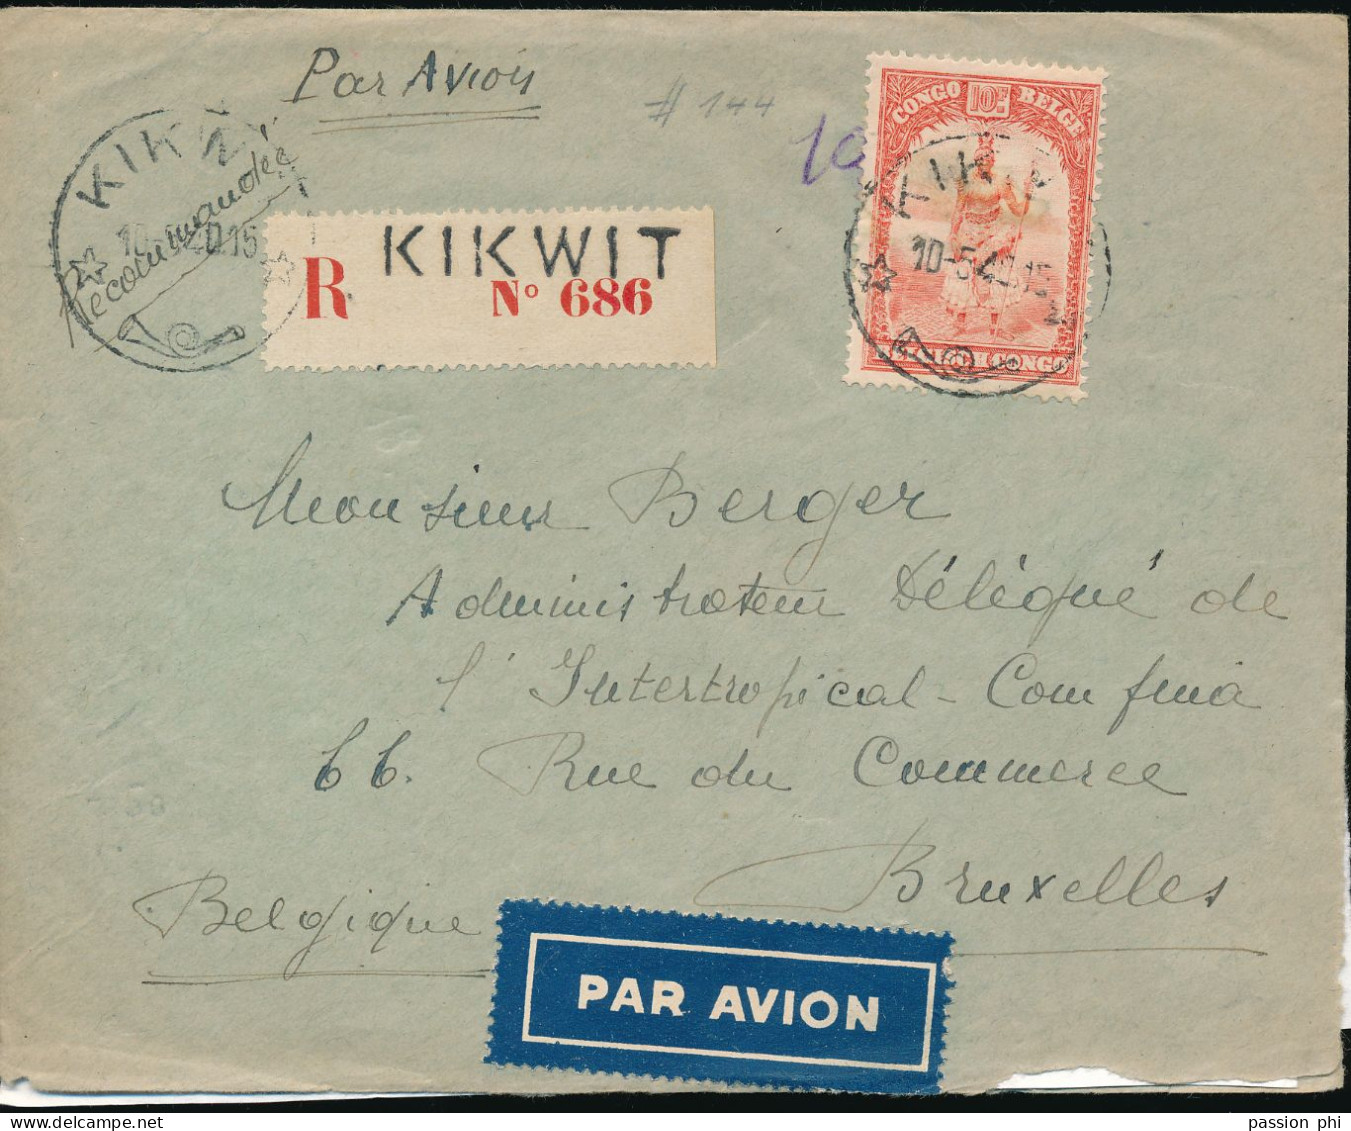 BELGIAN CONGO LETTRE RECOMMANDEE PAR AVION DE KIKWIT 10.05.40 (JOUR DE L'INVASION EN BELGIQUE) VERS BRUXELLES - Lettres & Documents